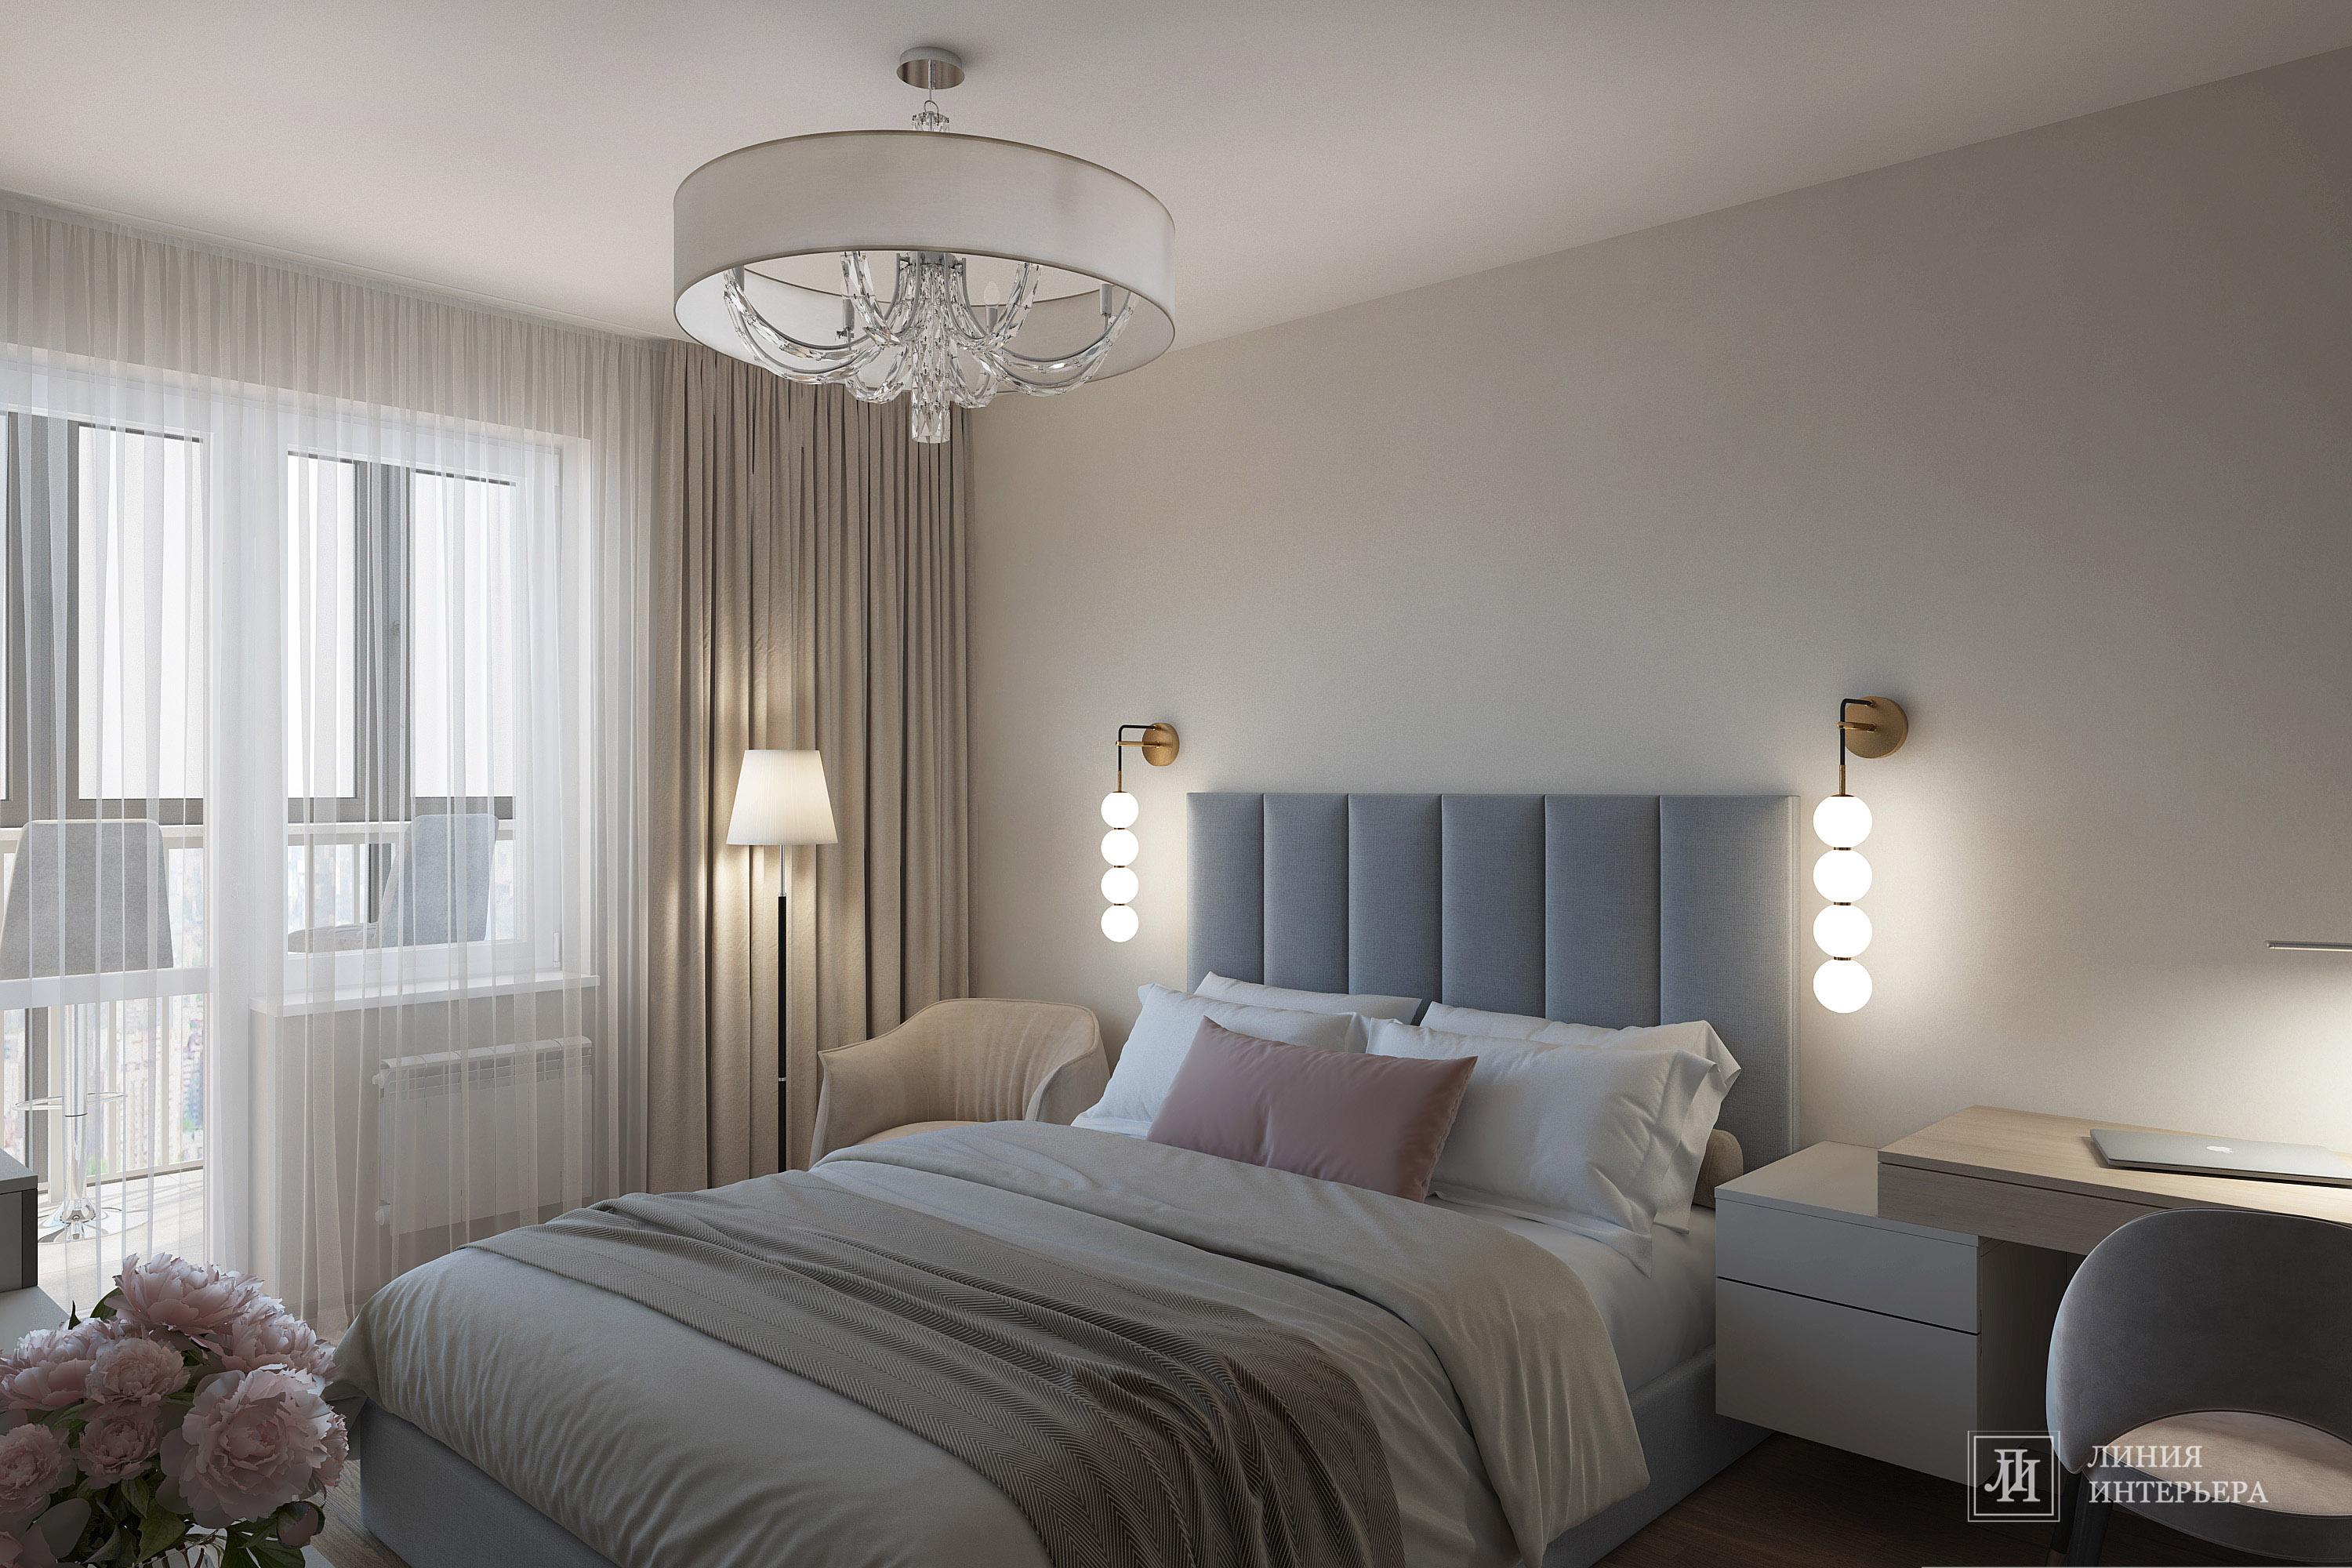 Интерьер спальни cветовыми линиями, подсветкой светодиодной и светильниками над кроватью